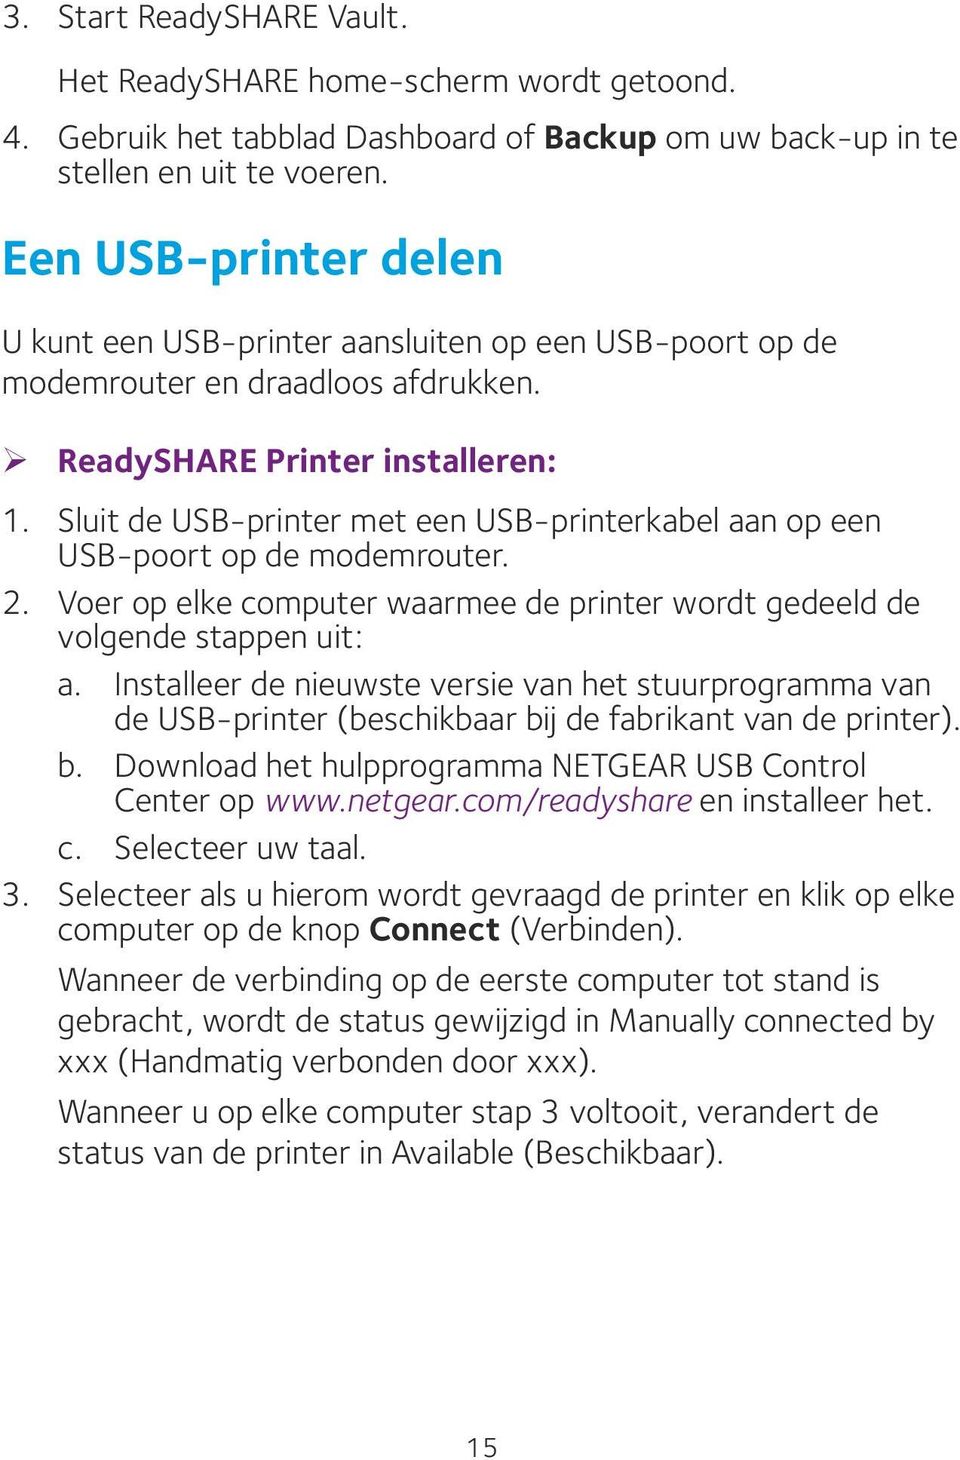 Sluit de USB-printer met een USB-printerkabel aan op een USB-poort op de modemrouter. 2. Voer op elke computer waarmee de printer wordt gedeeld de volgende stappen uit: a.